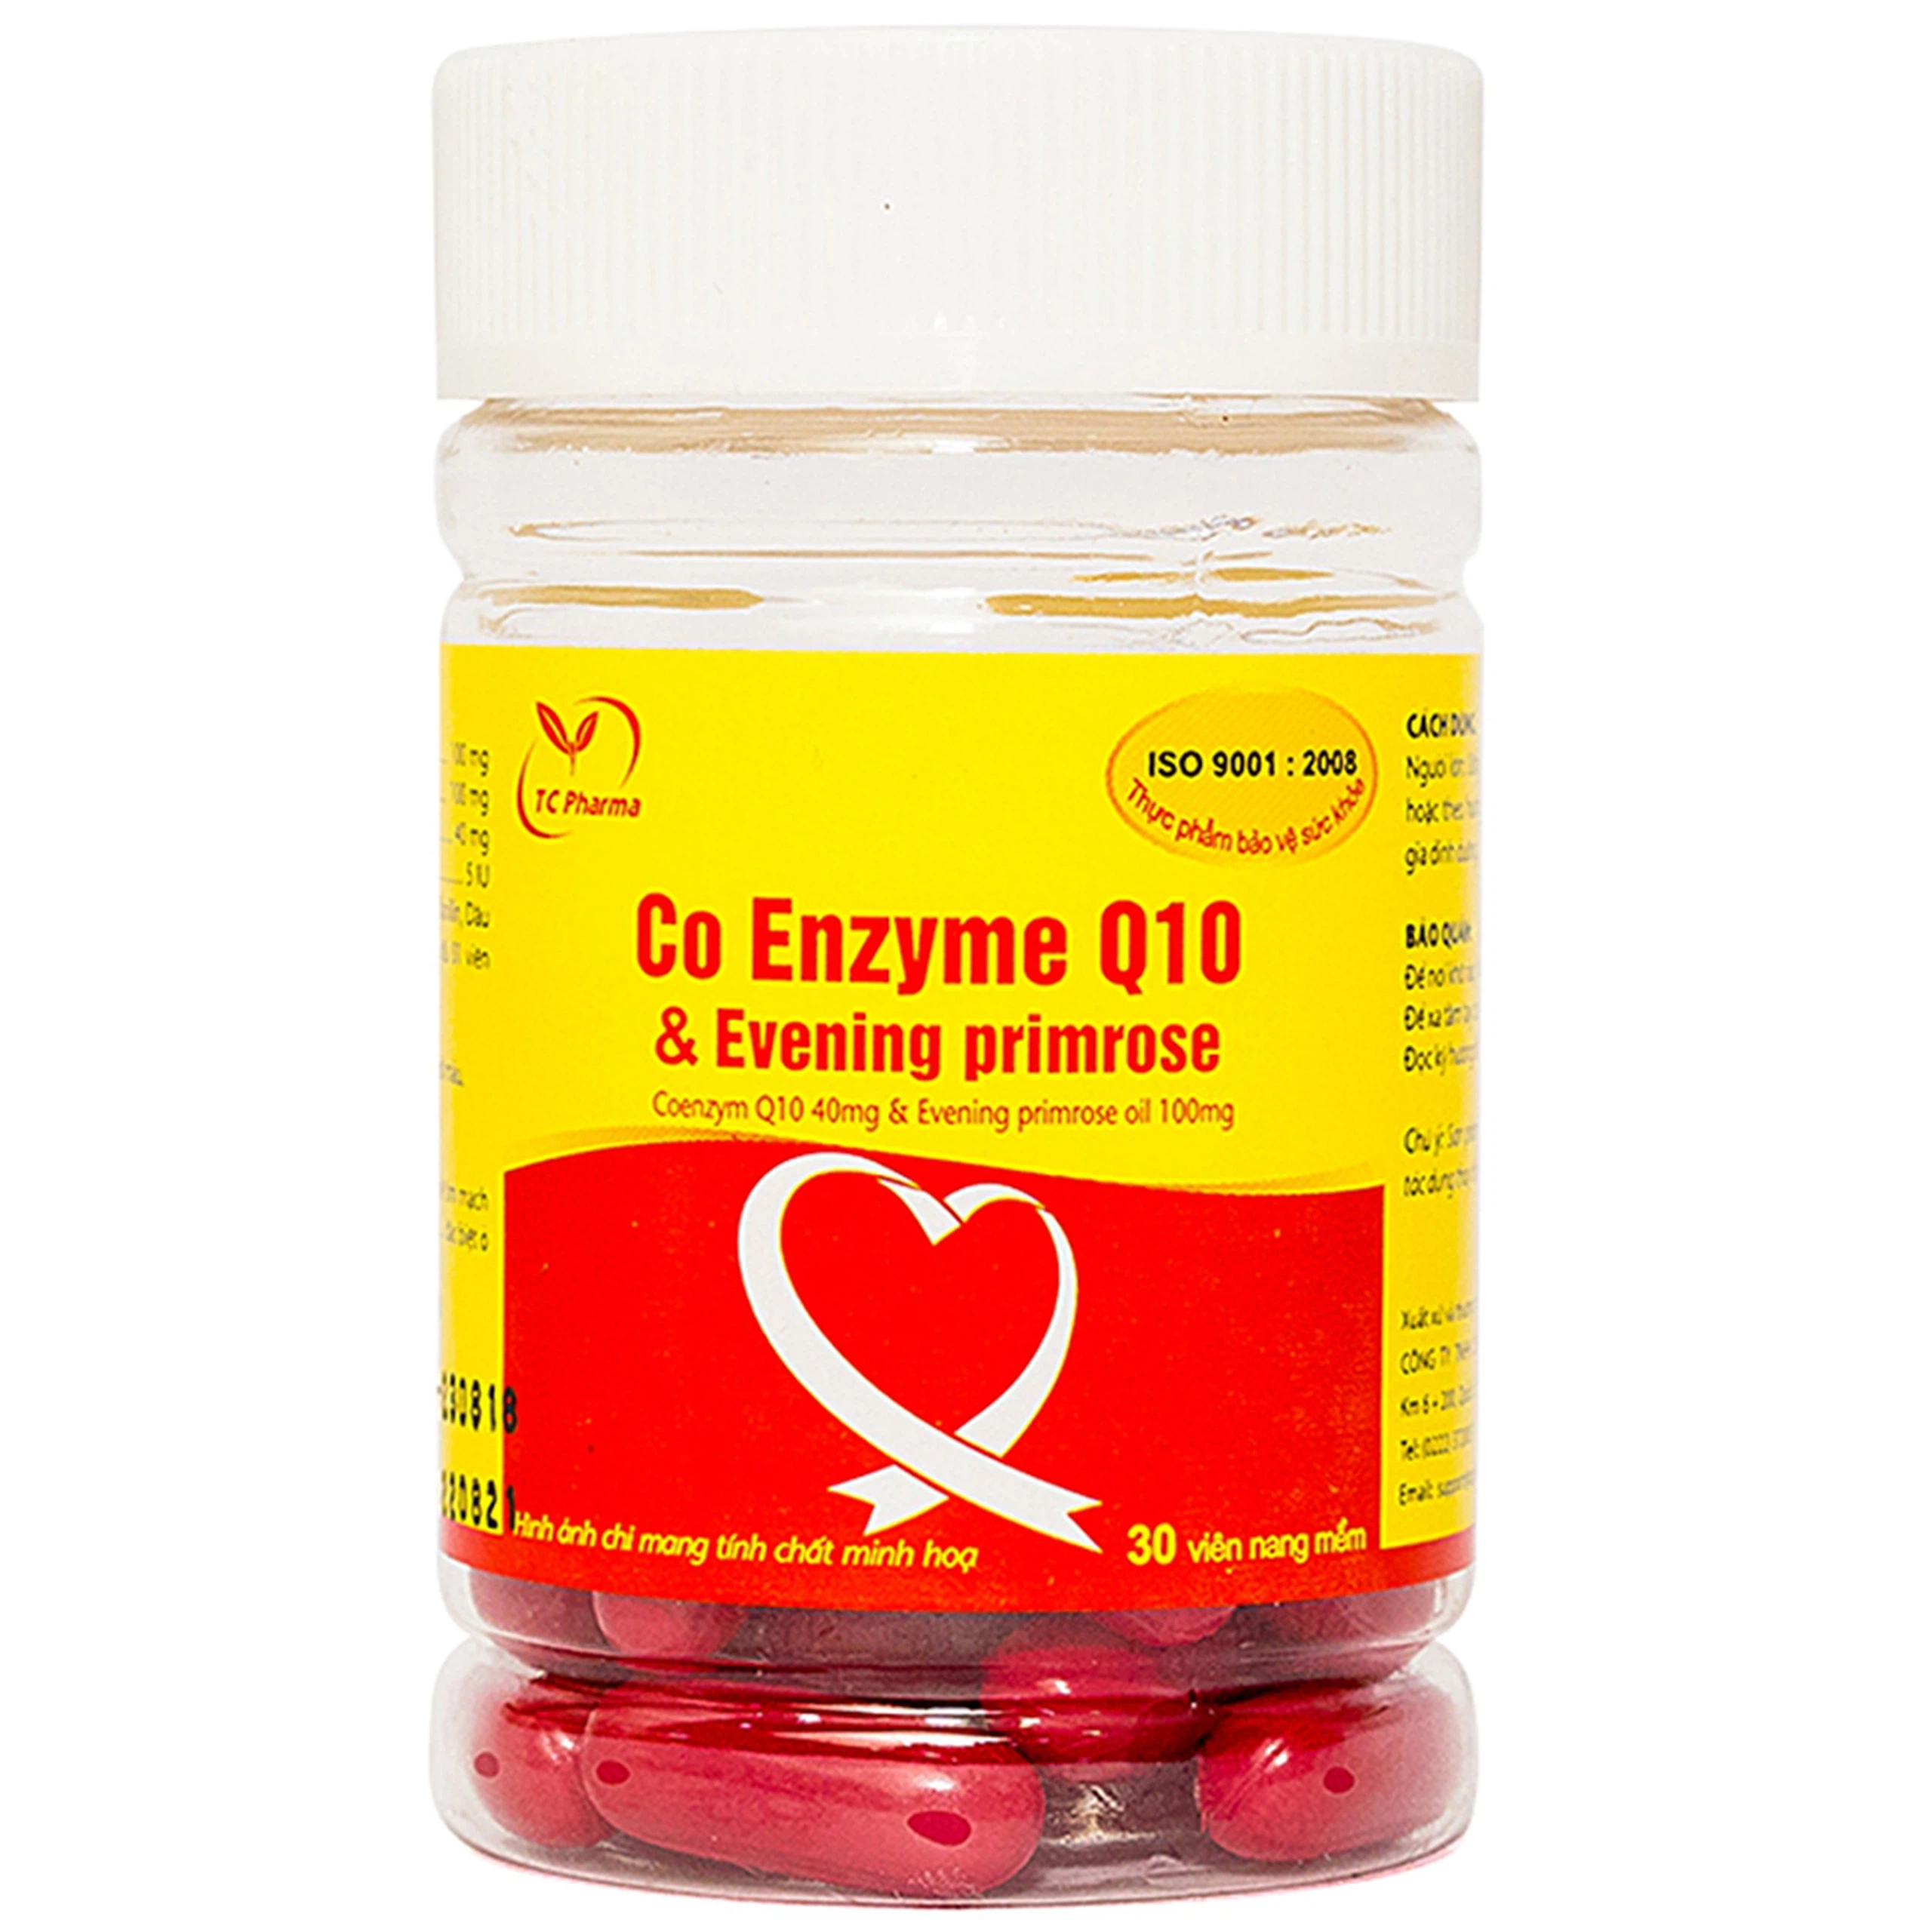 Viên uống Co Enzyme Q10 & Evening primrose Thành Công hỗ trợ chức năng tim mạch (30 viên)